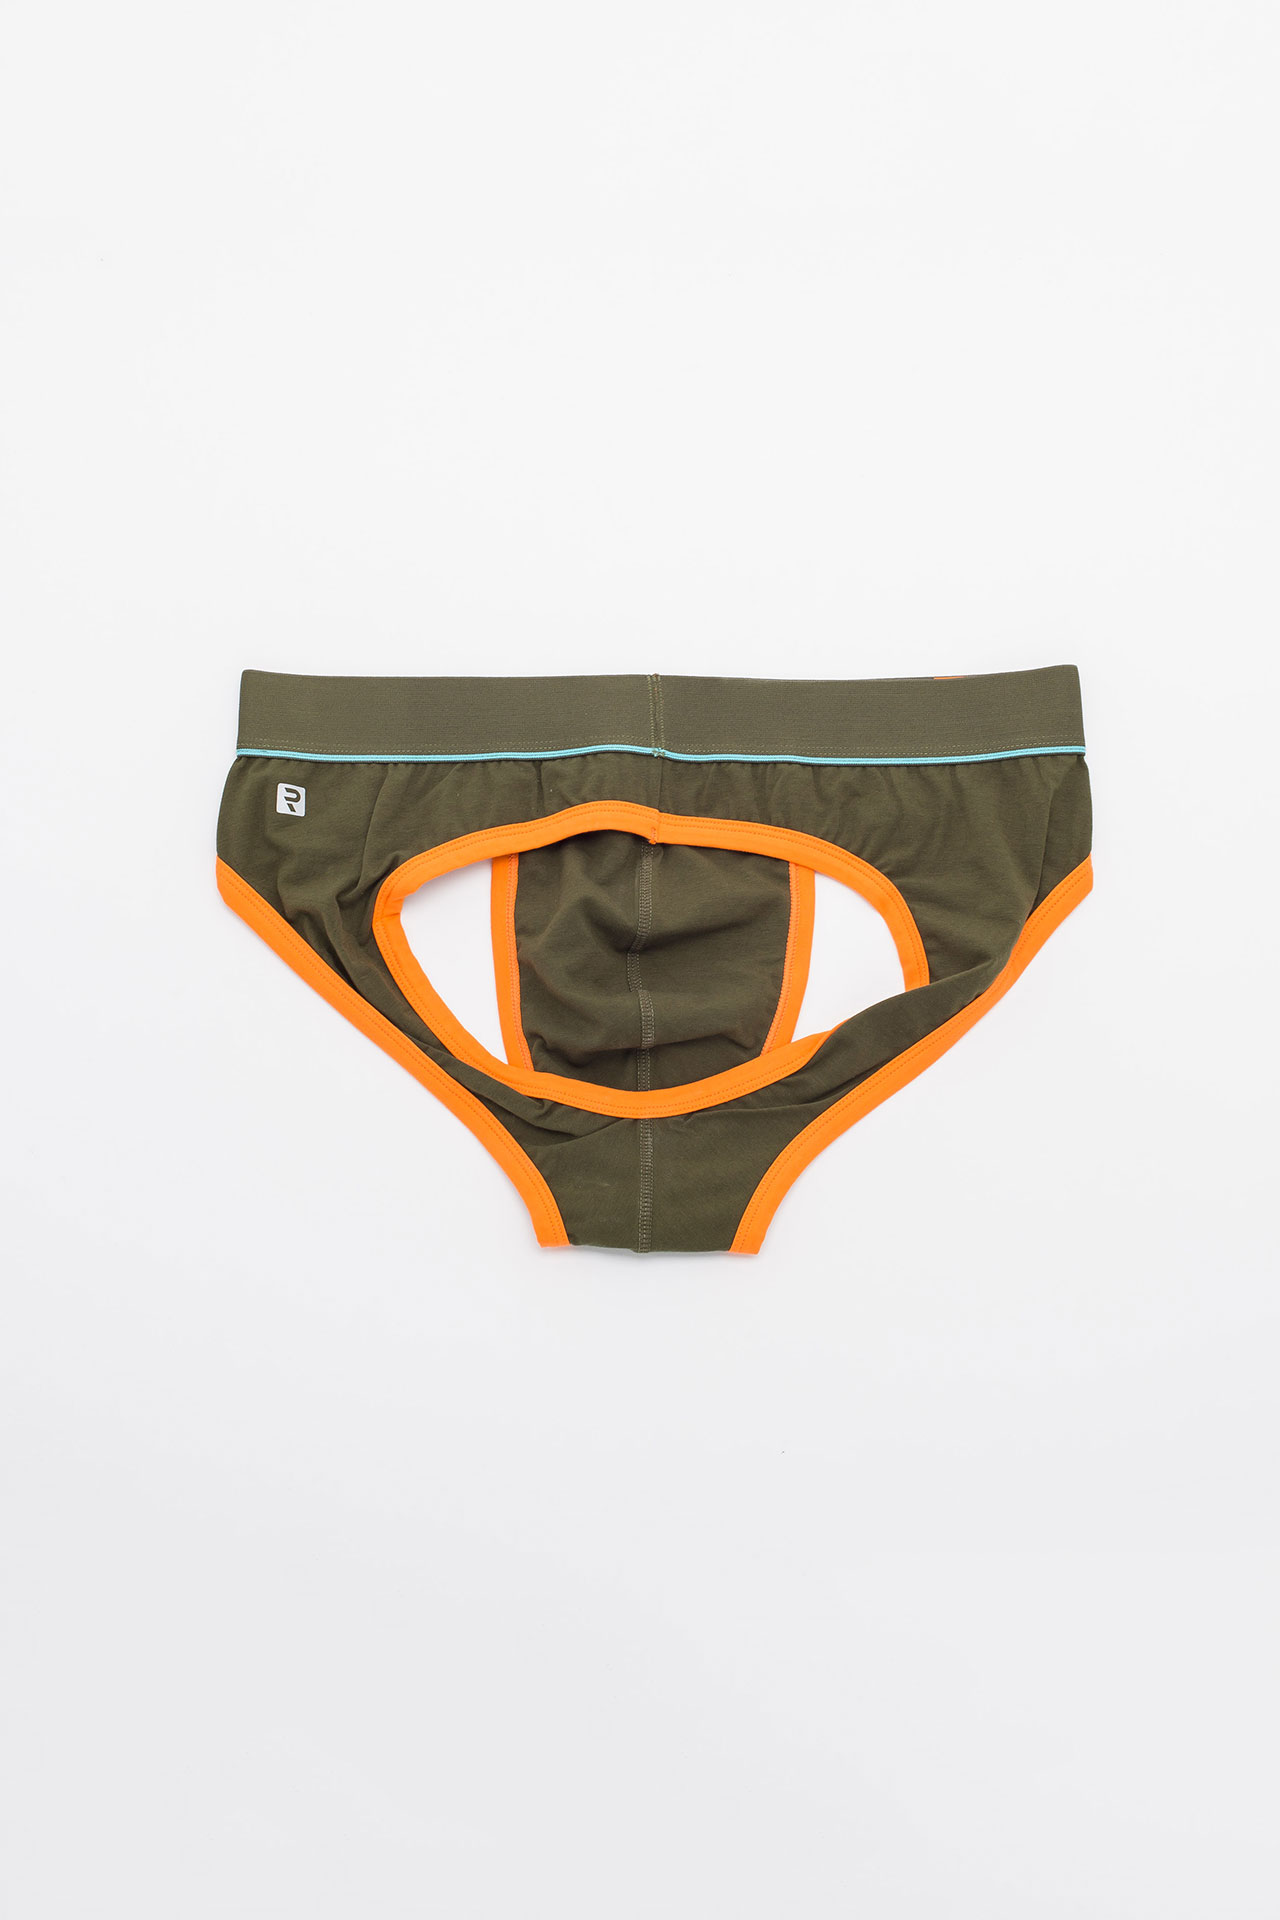 Men's Low Rise Contour Pouch Jockstrap Backless Briefs Underwear